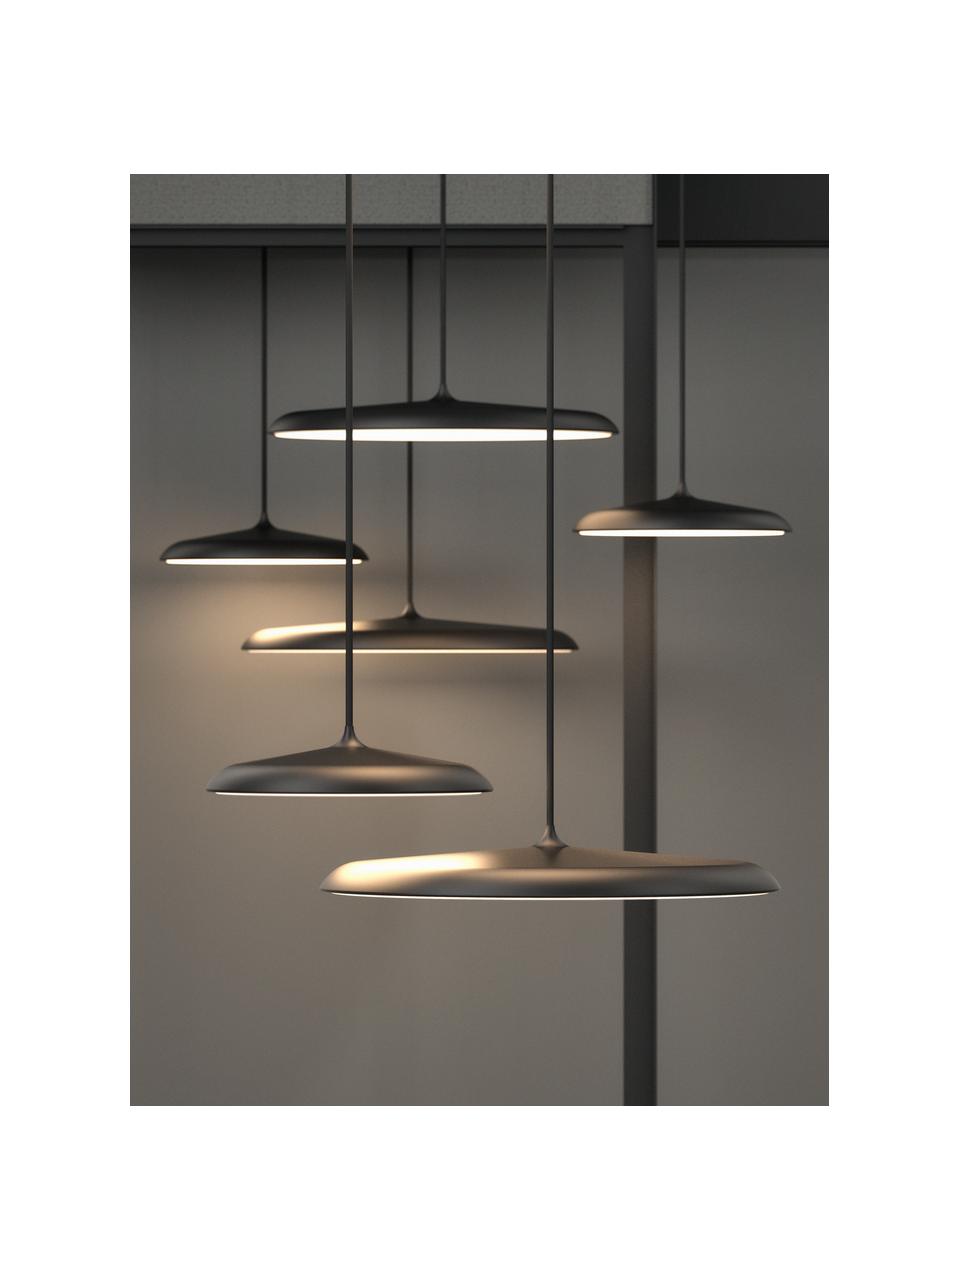 XS LED hanglamp Artist, Lampenkap: gelakt staal, Diffuser: kunststof, Lampenkap: zwart<br>Diffuser: wit<br>Plafondkap en snoer: zwart, Ø 40 x H 6 cm